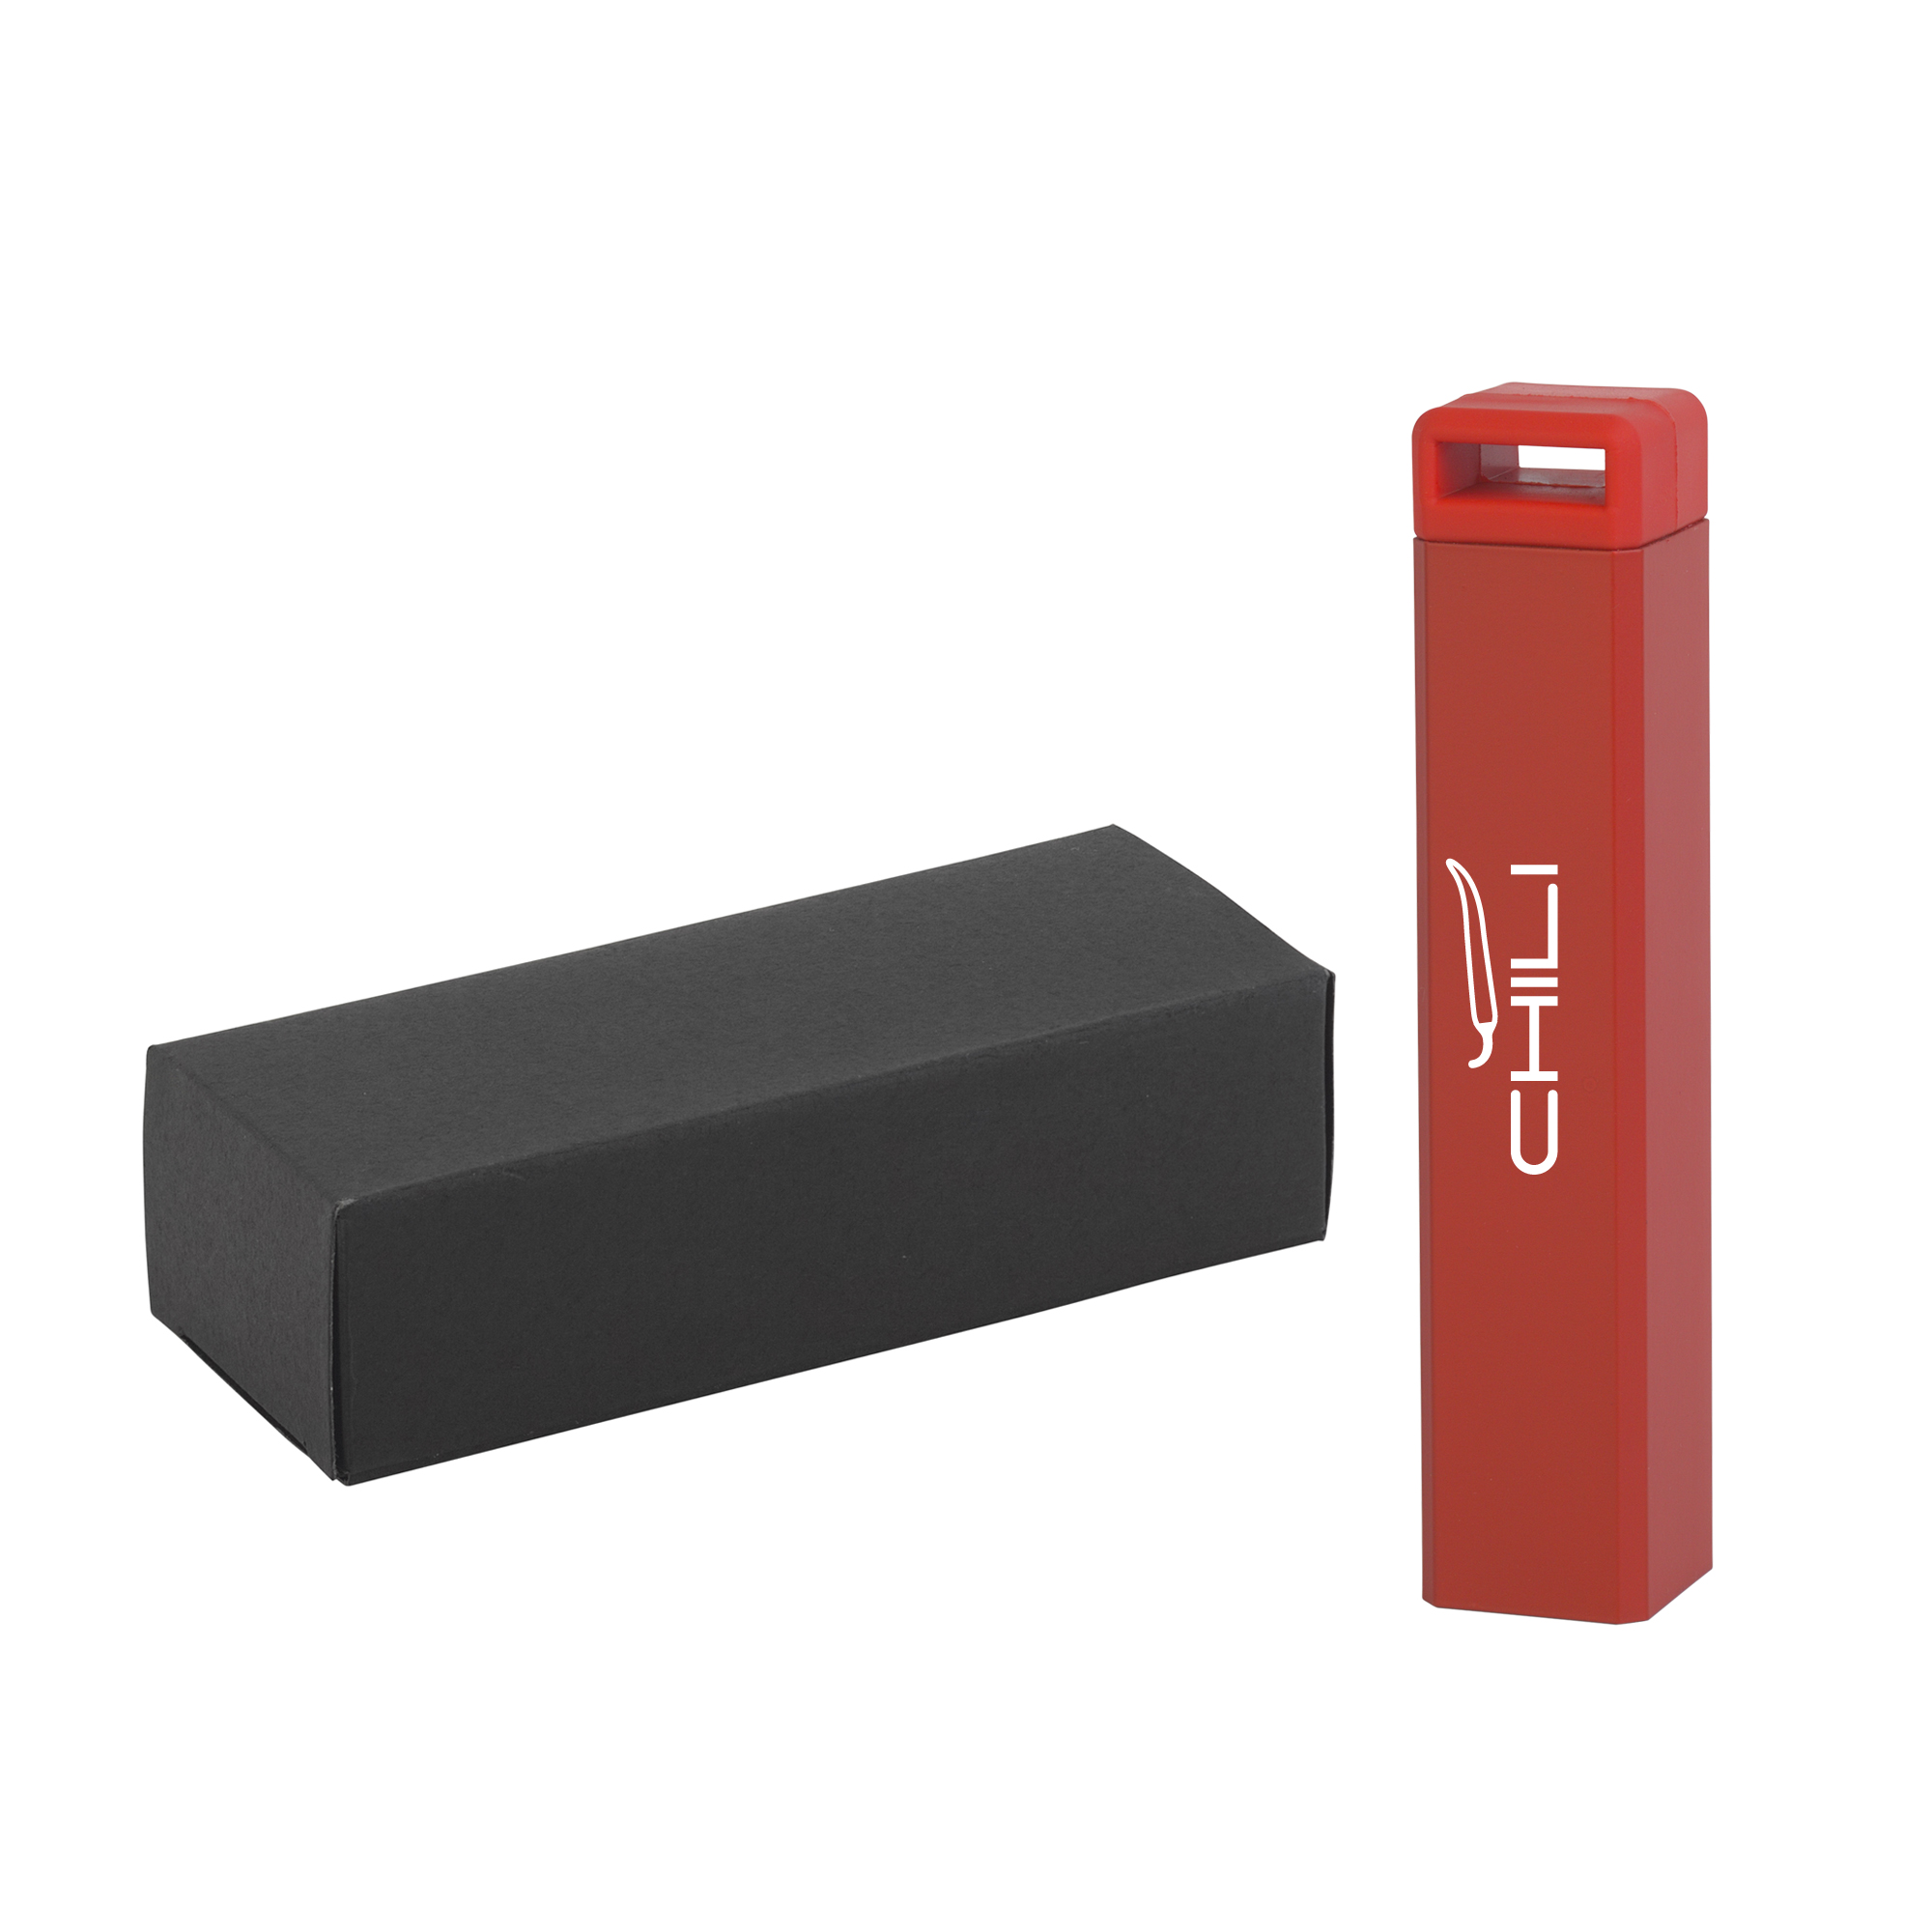 Зарядное устройство "Chida" 2800 mAh, красный, покрытие soft touch#